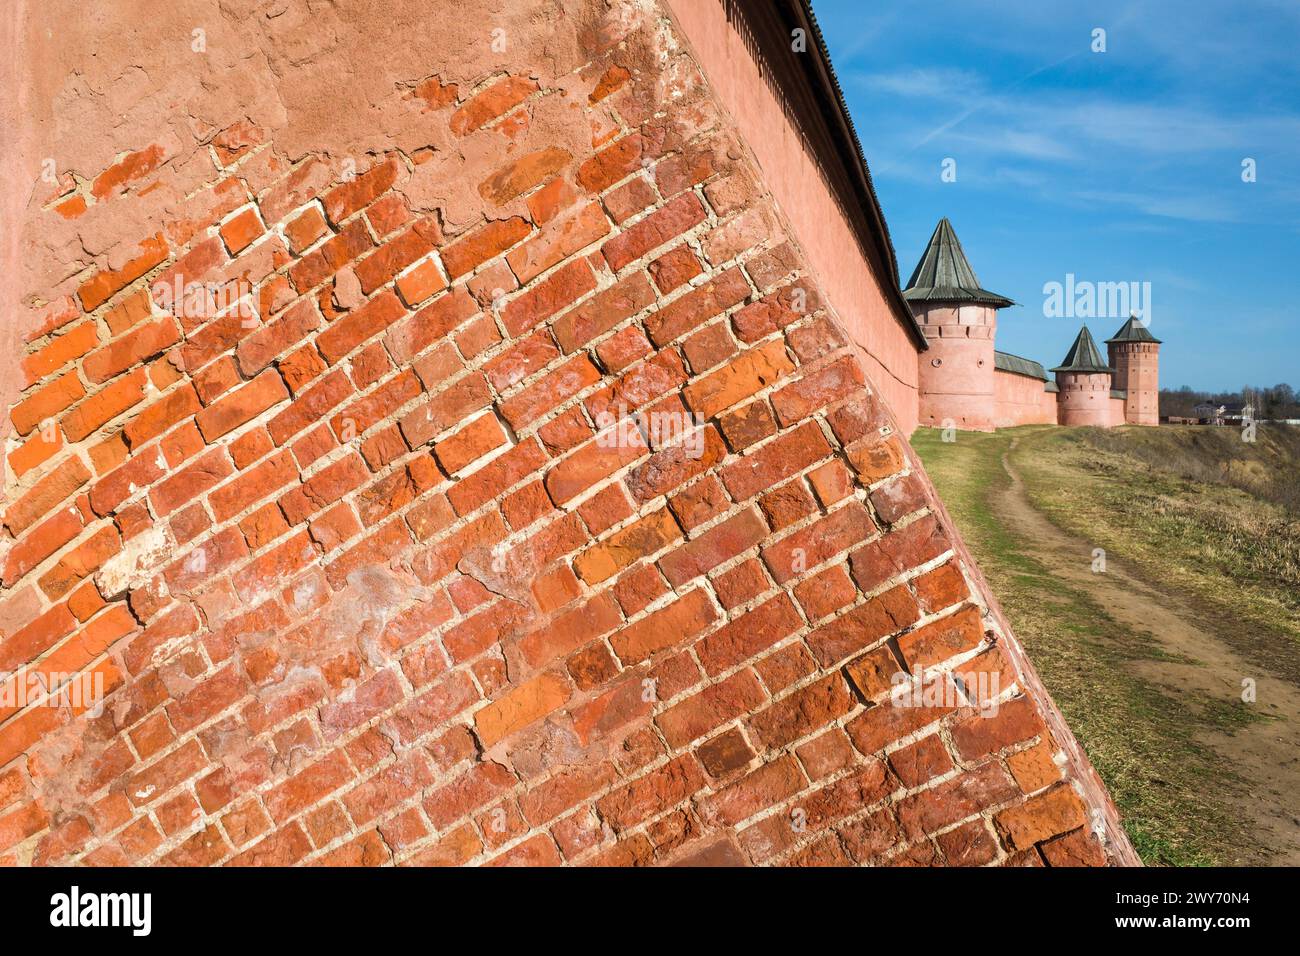 Détail du mur de briques rouges et des tours du monastère Saint Euthymius à Souzdal, architecture du patrimoine russe. Anneau d'or de Russie Banque D'Images